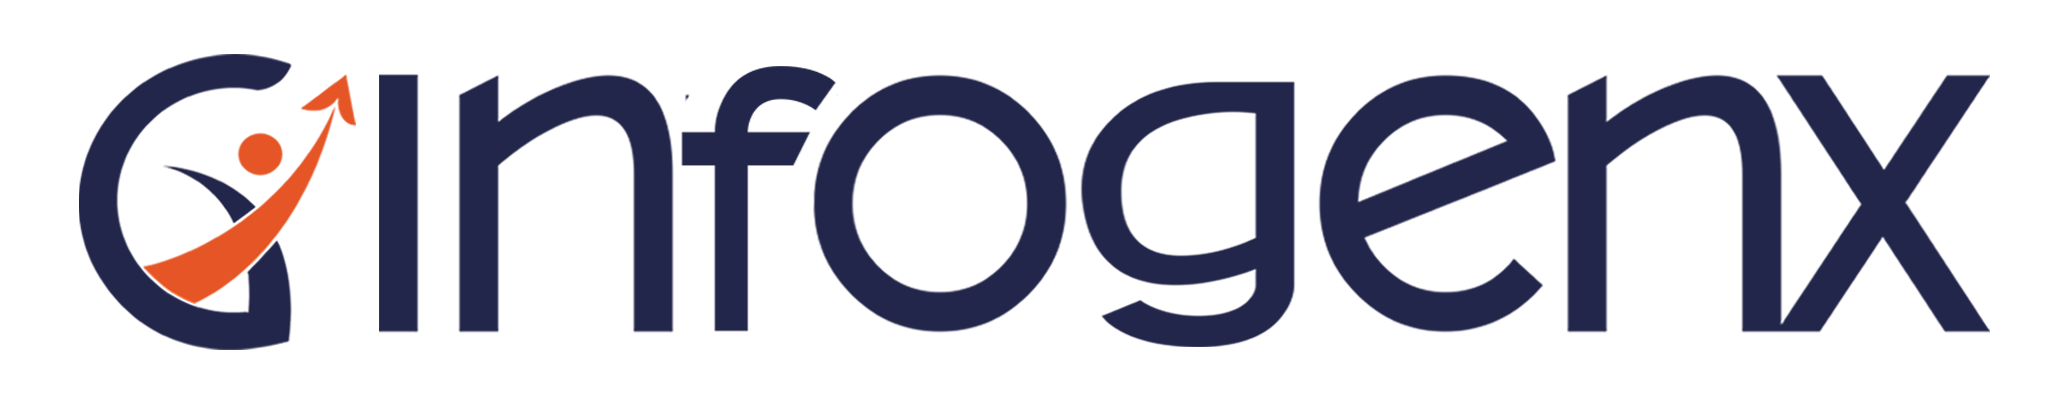 infogenx-logo